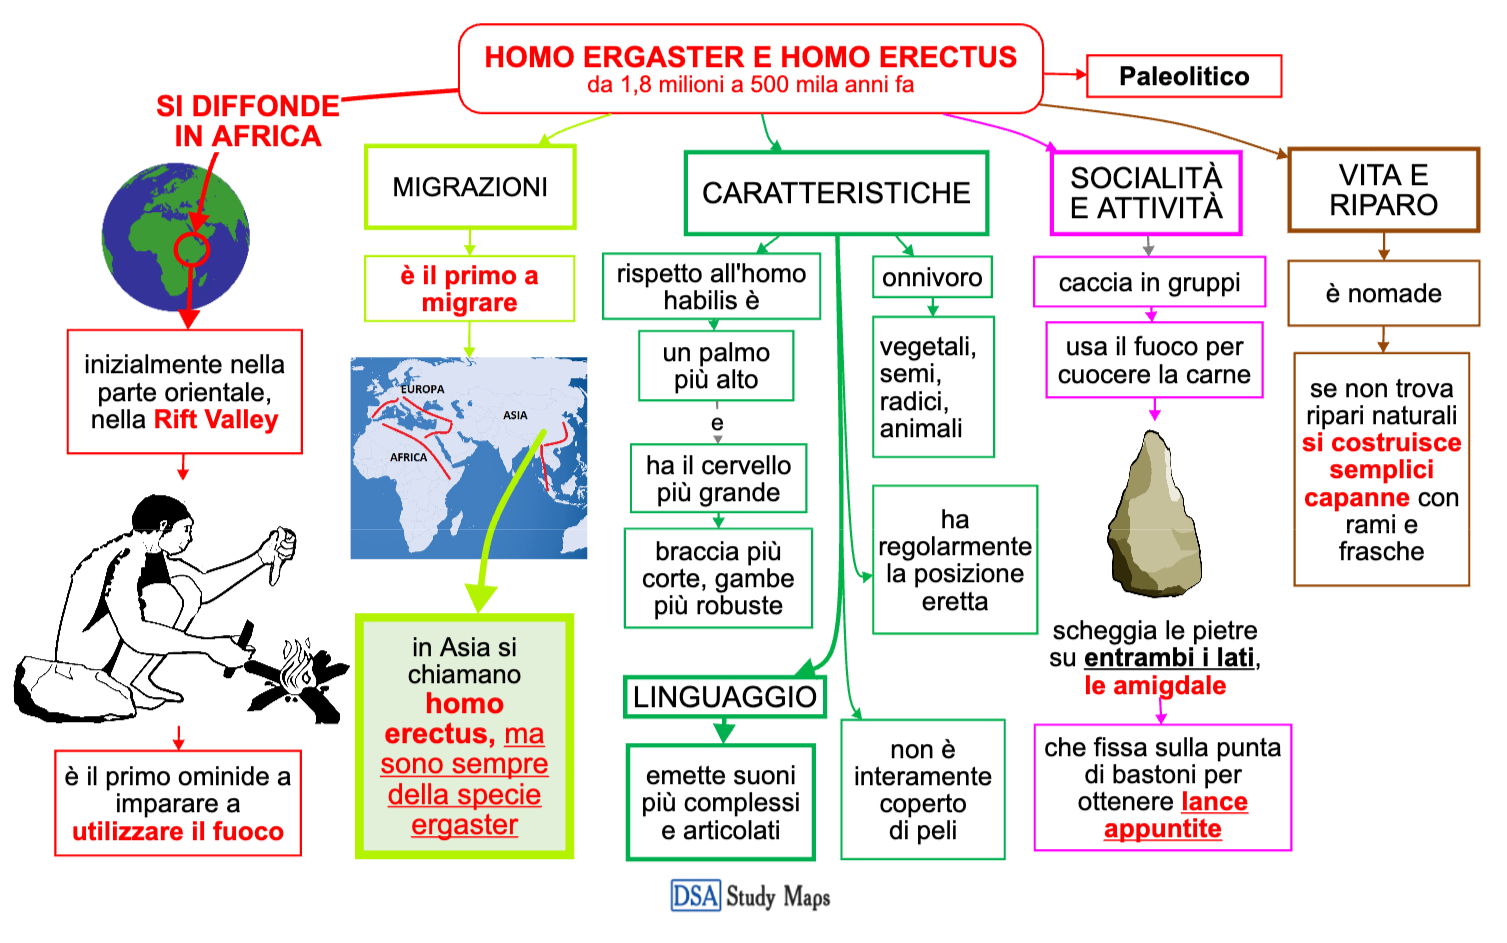 homo ergaster e homo erectus